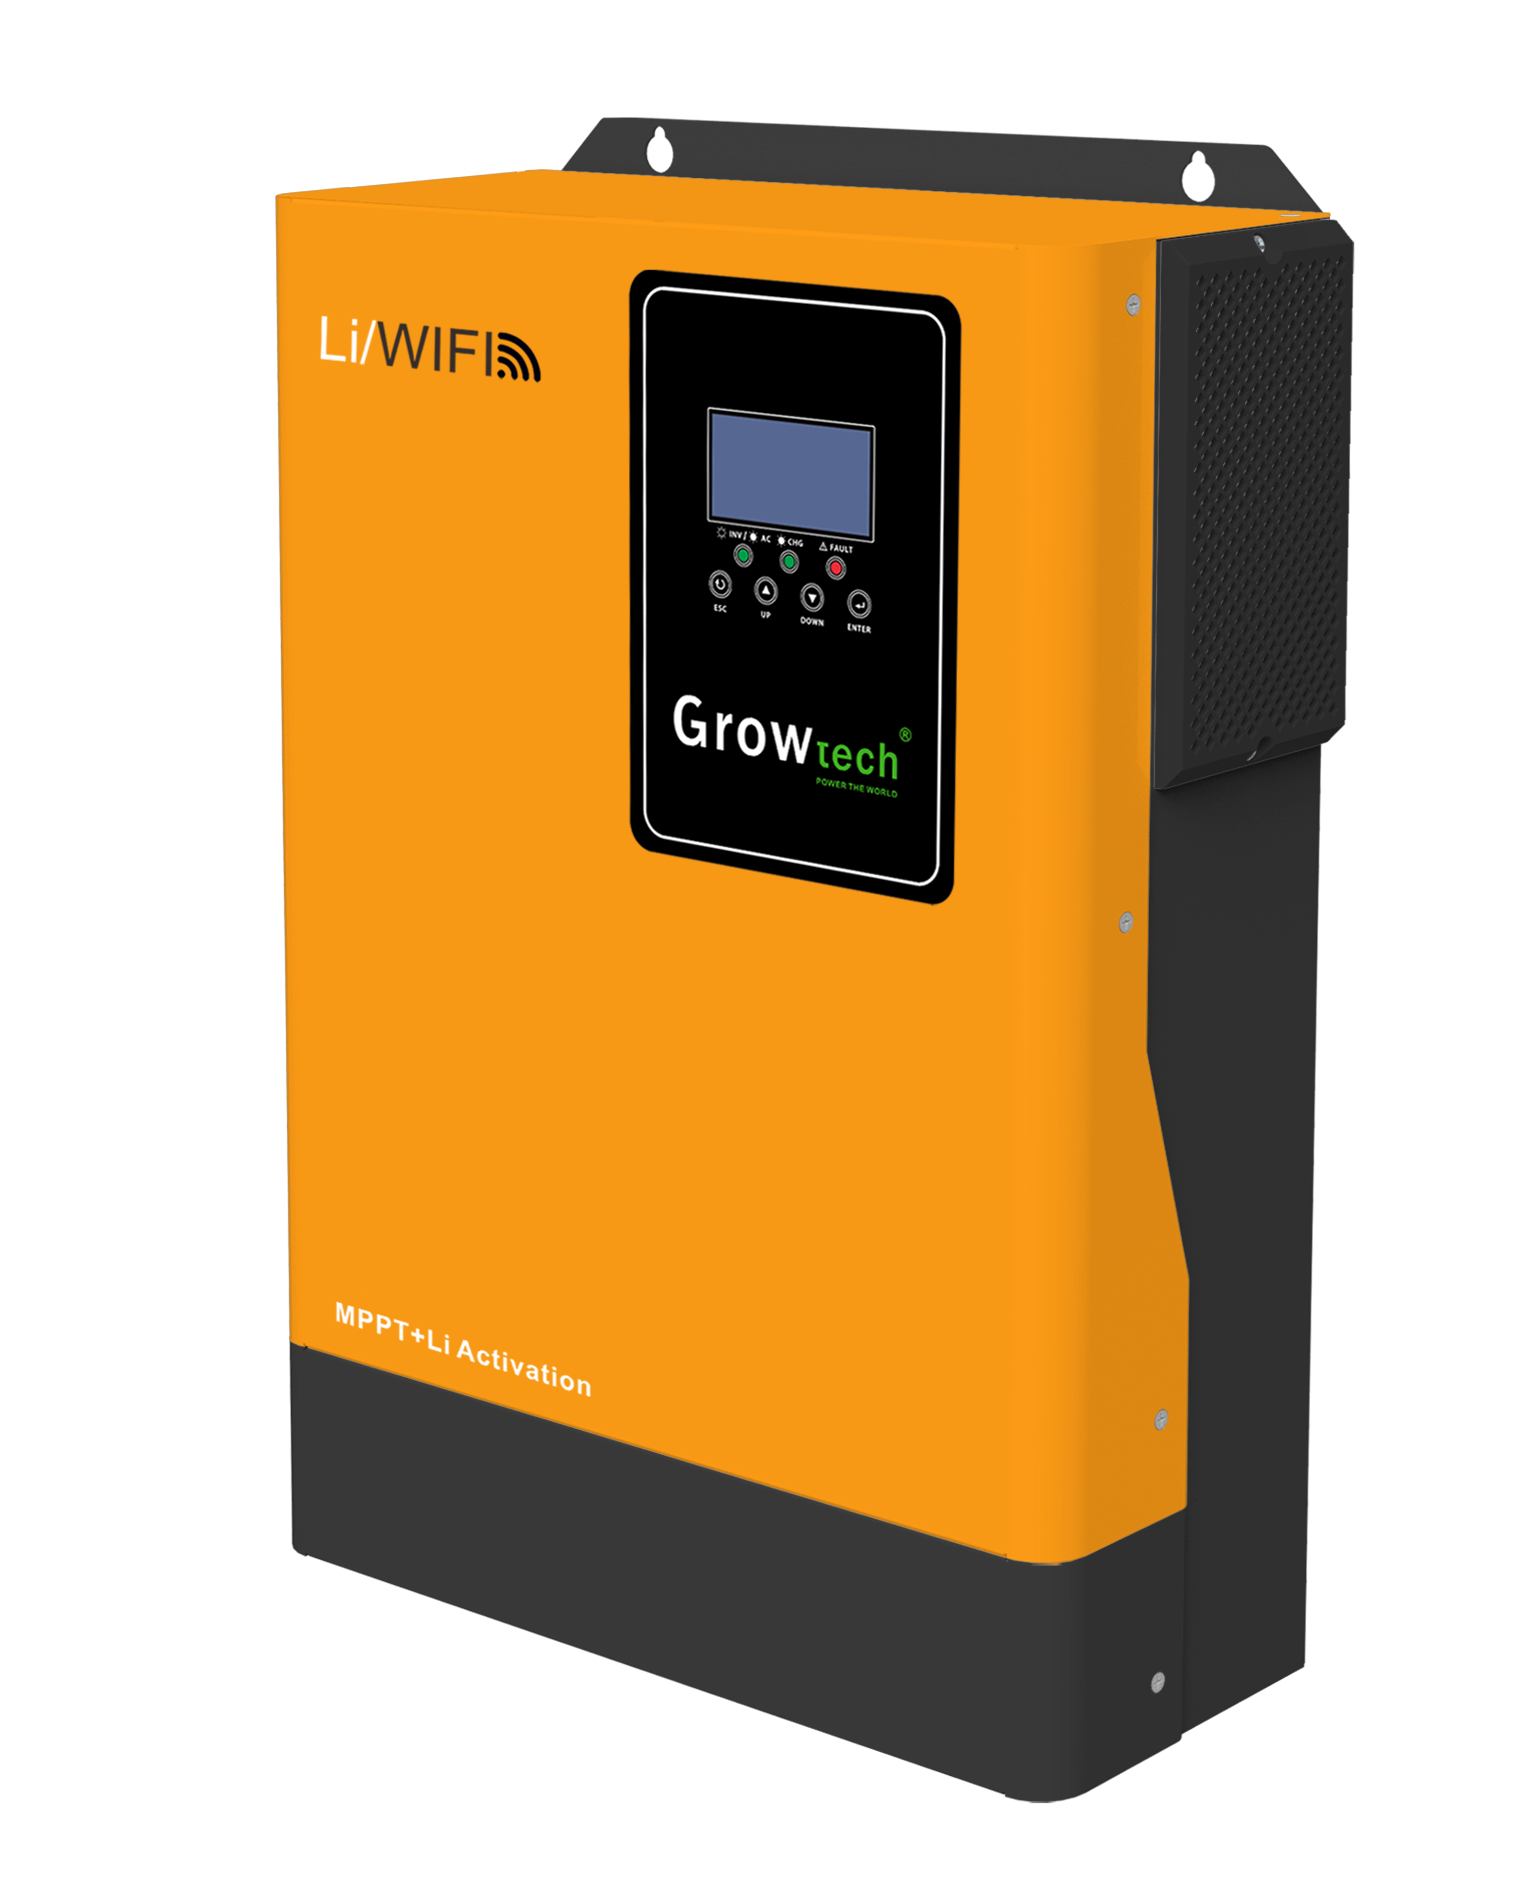 Growtech 5.5KW Inverter | 100A MPPT | 48V Yellow